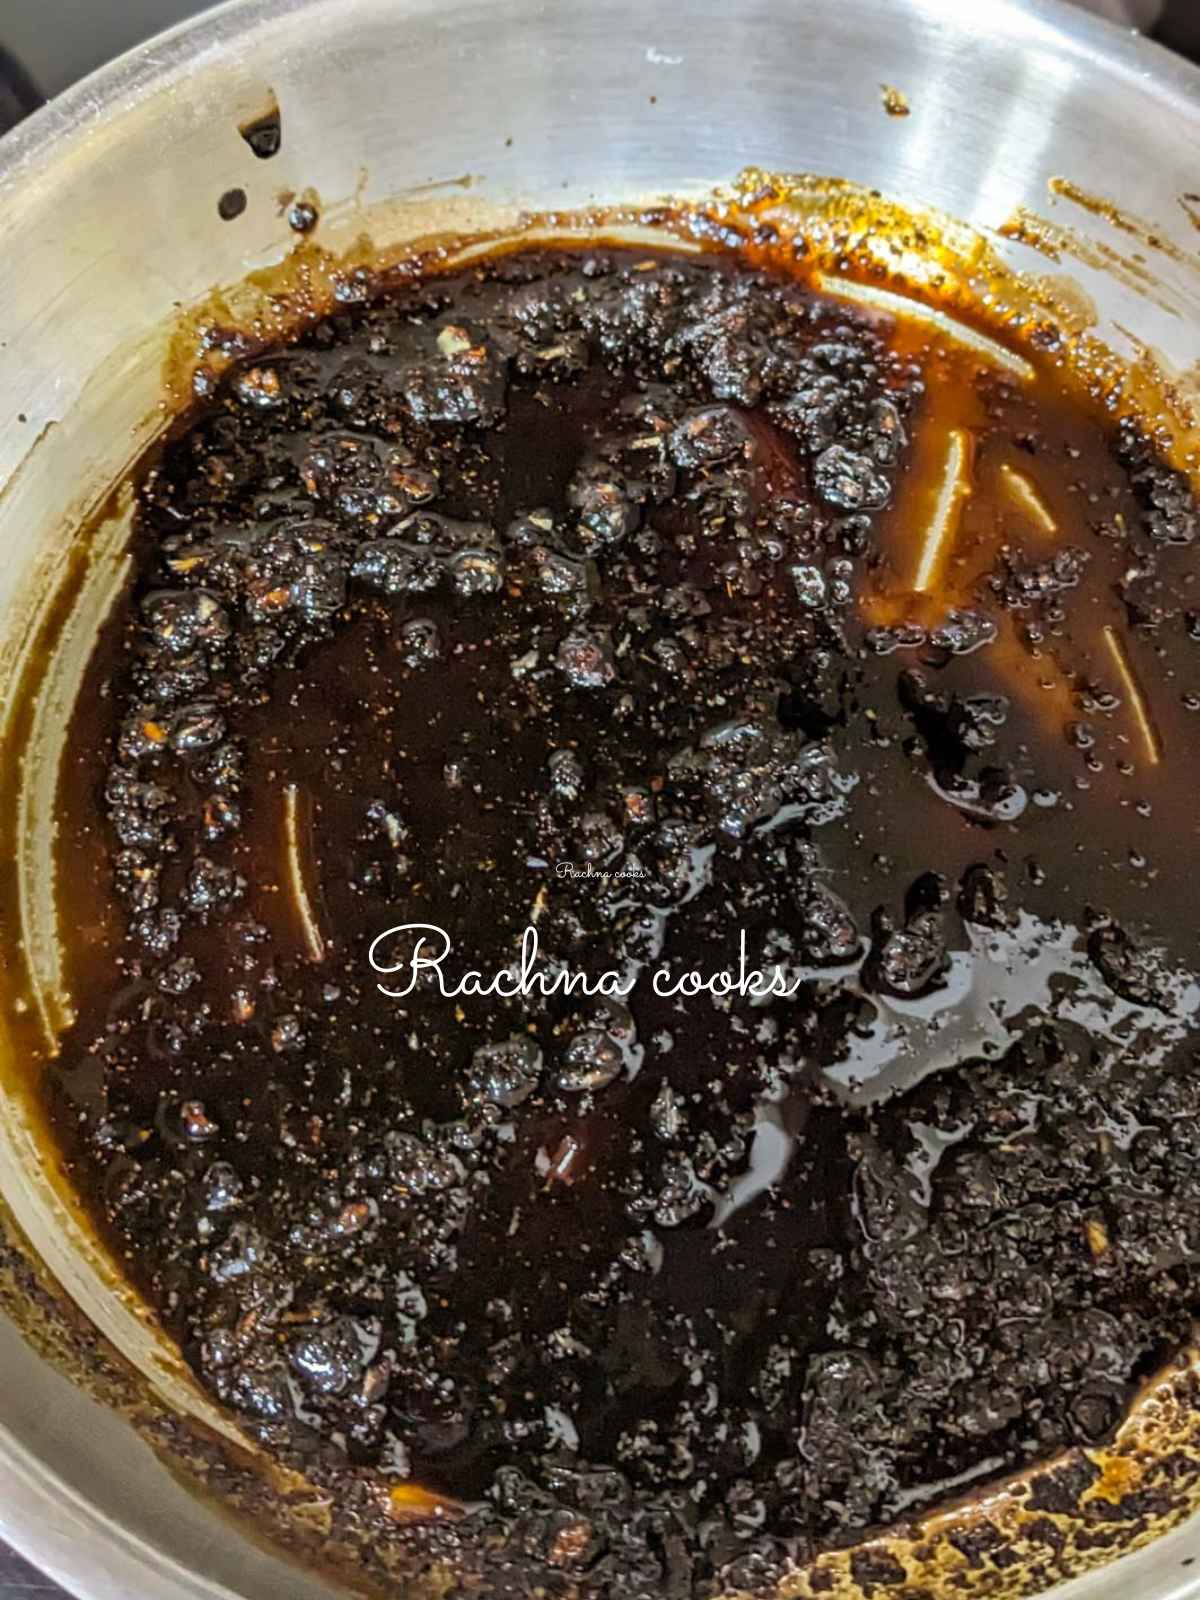 Honey garlic sauce being made in pan